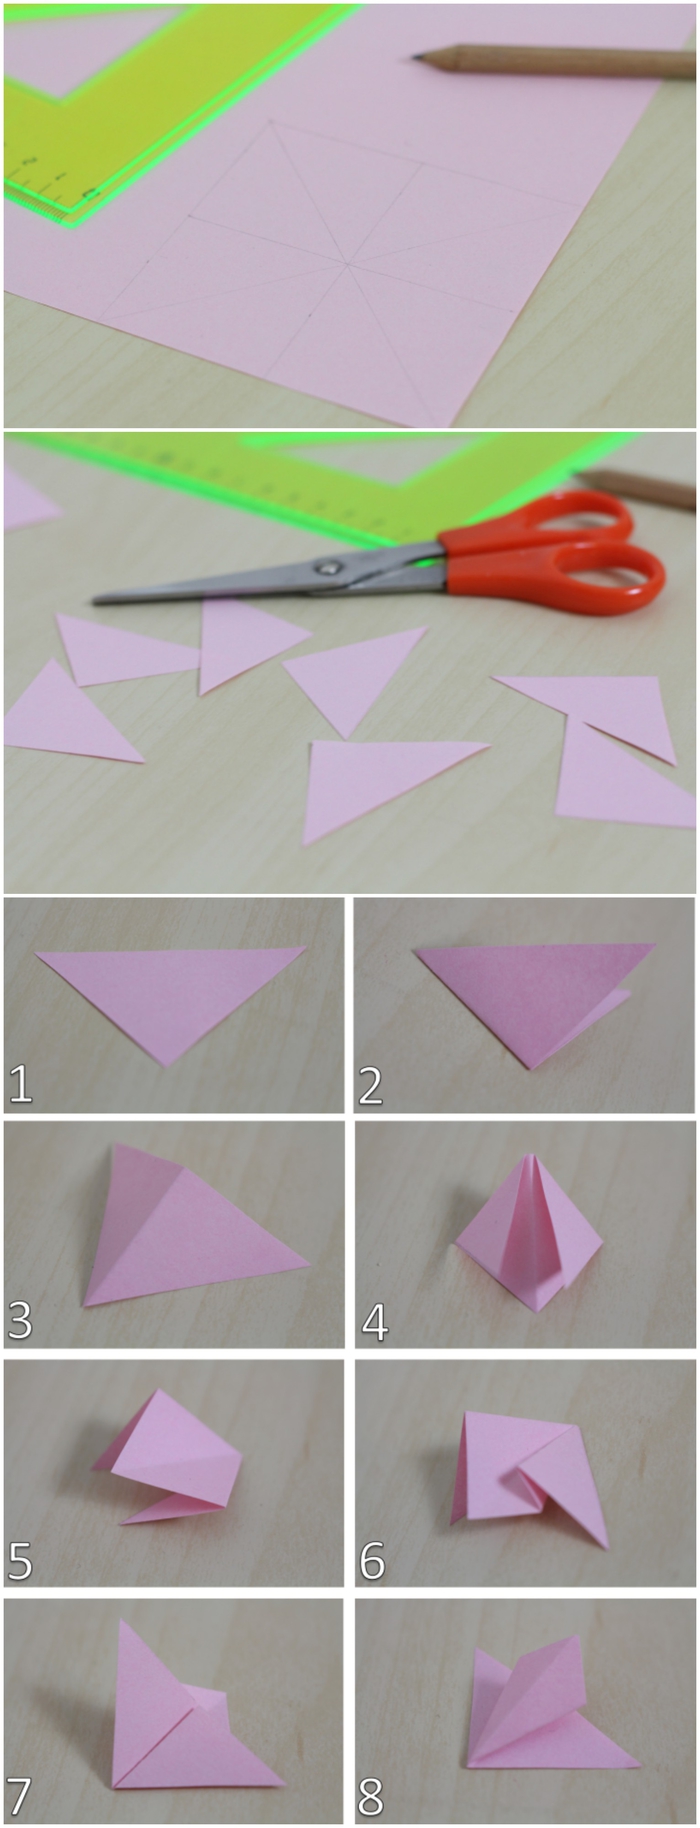 le pliage papier facile pour réaliser une fleur origami, une carte de voeux originale personnalisée avec une fleur en papier 